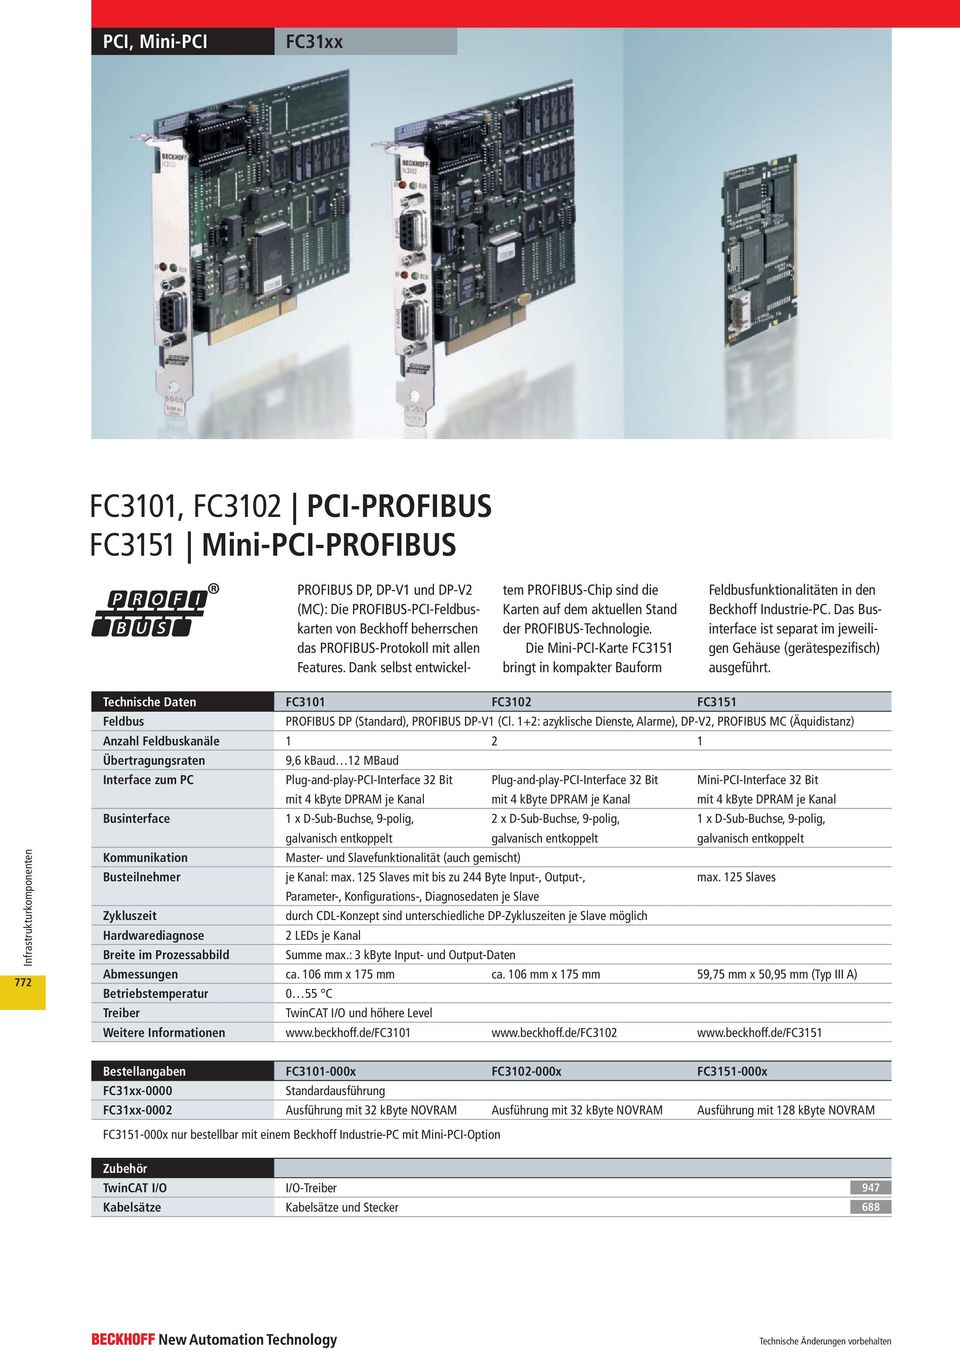 Die Mini-PCI-Karte FC3151 bringt in kompakter Bauform Feldbusfunktionalitäten in den Beckhoff Industrie-PC. Das Businterface ist separat im jeweiligen Gehäuse (geräte spezifisch) ausgeführt.